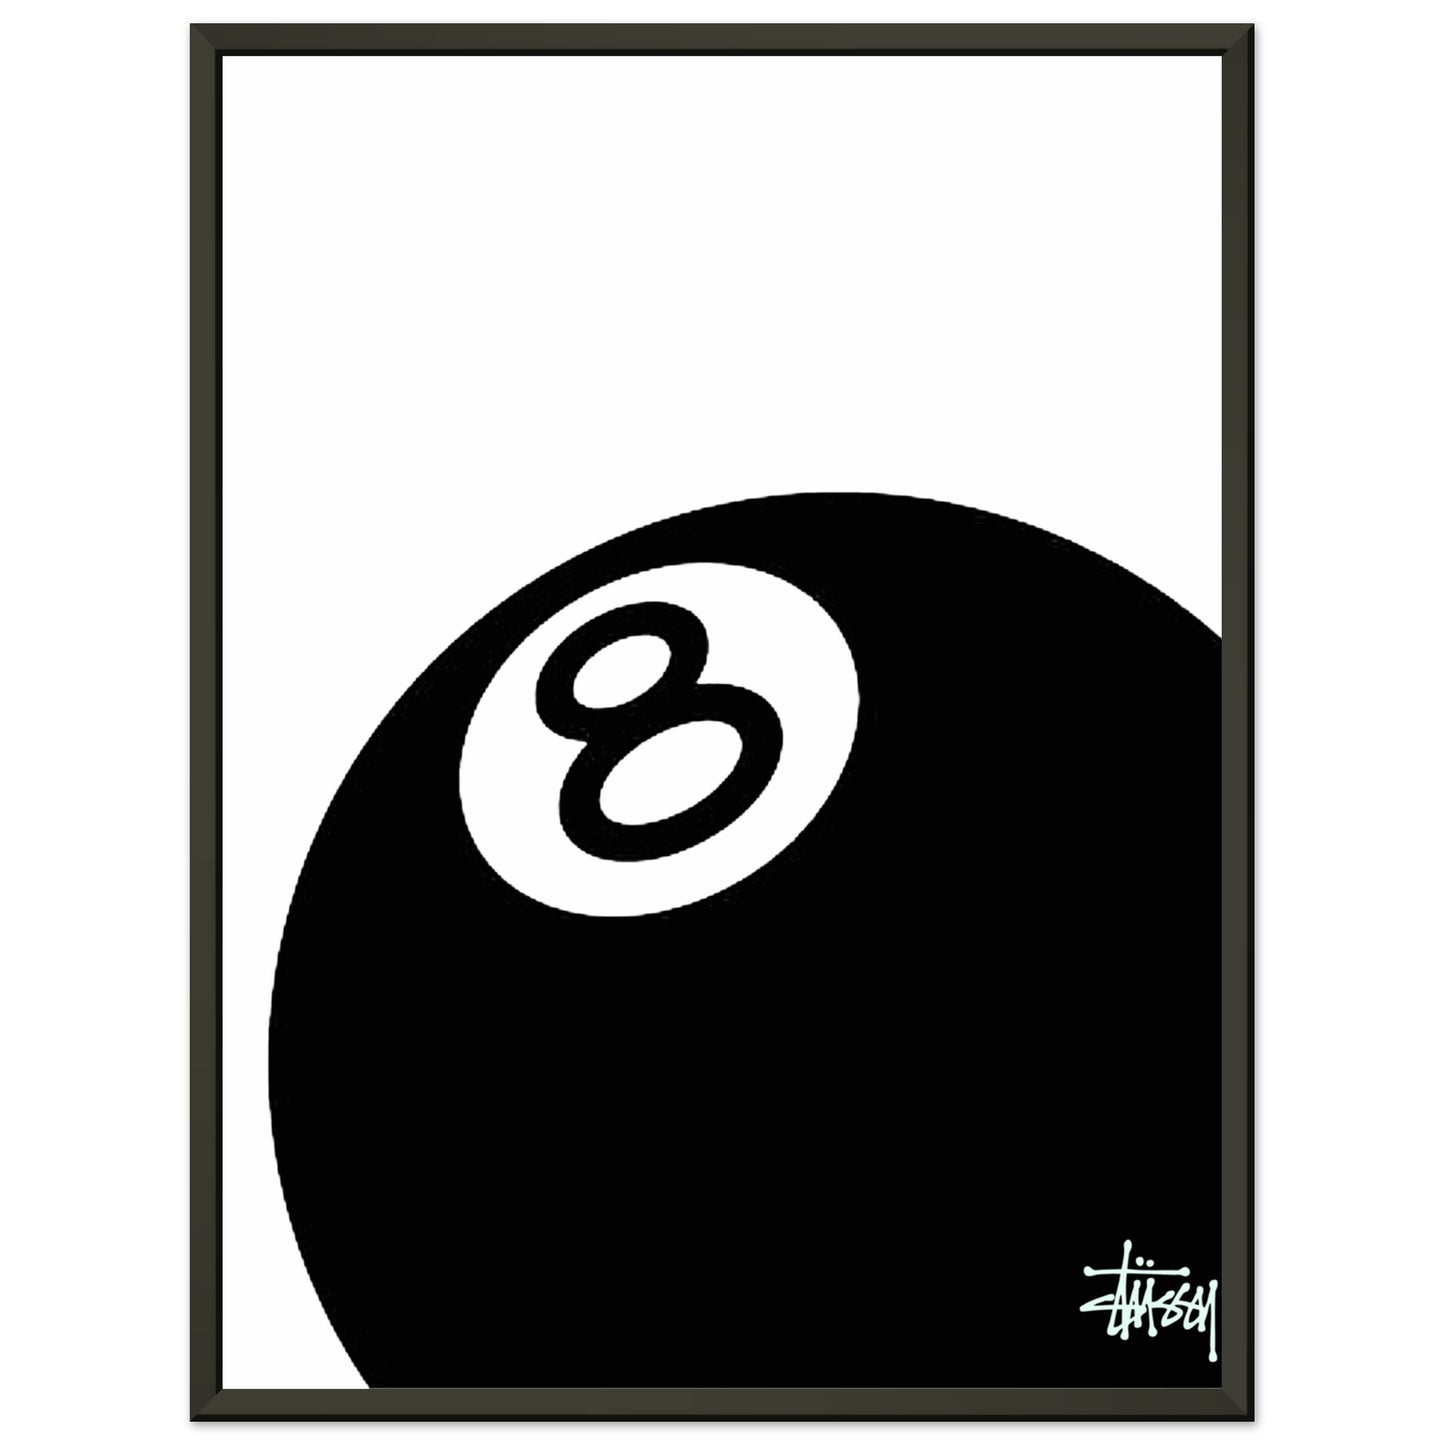 Stussy 8-Ball